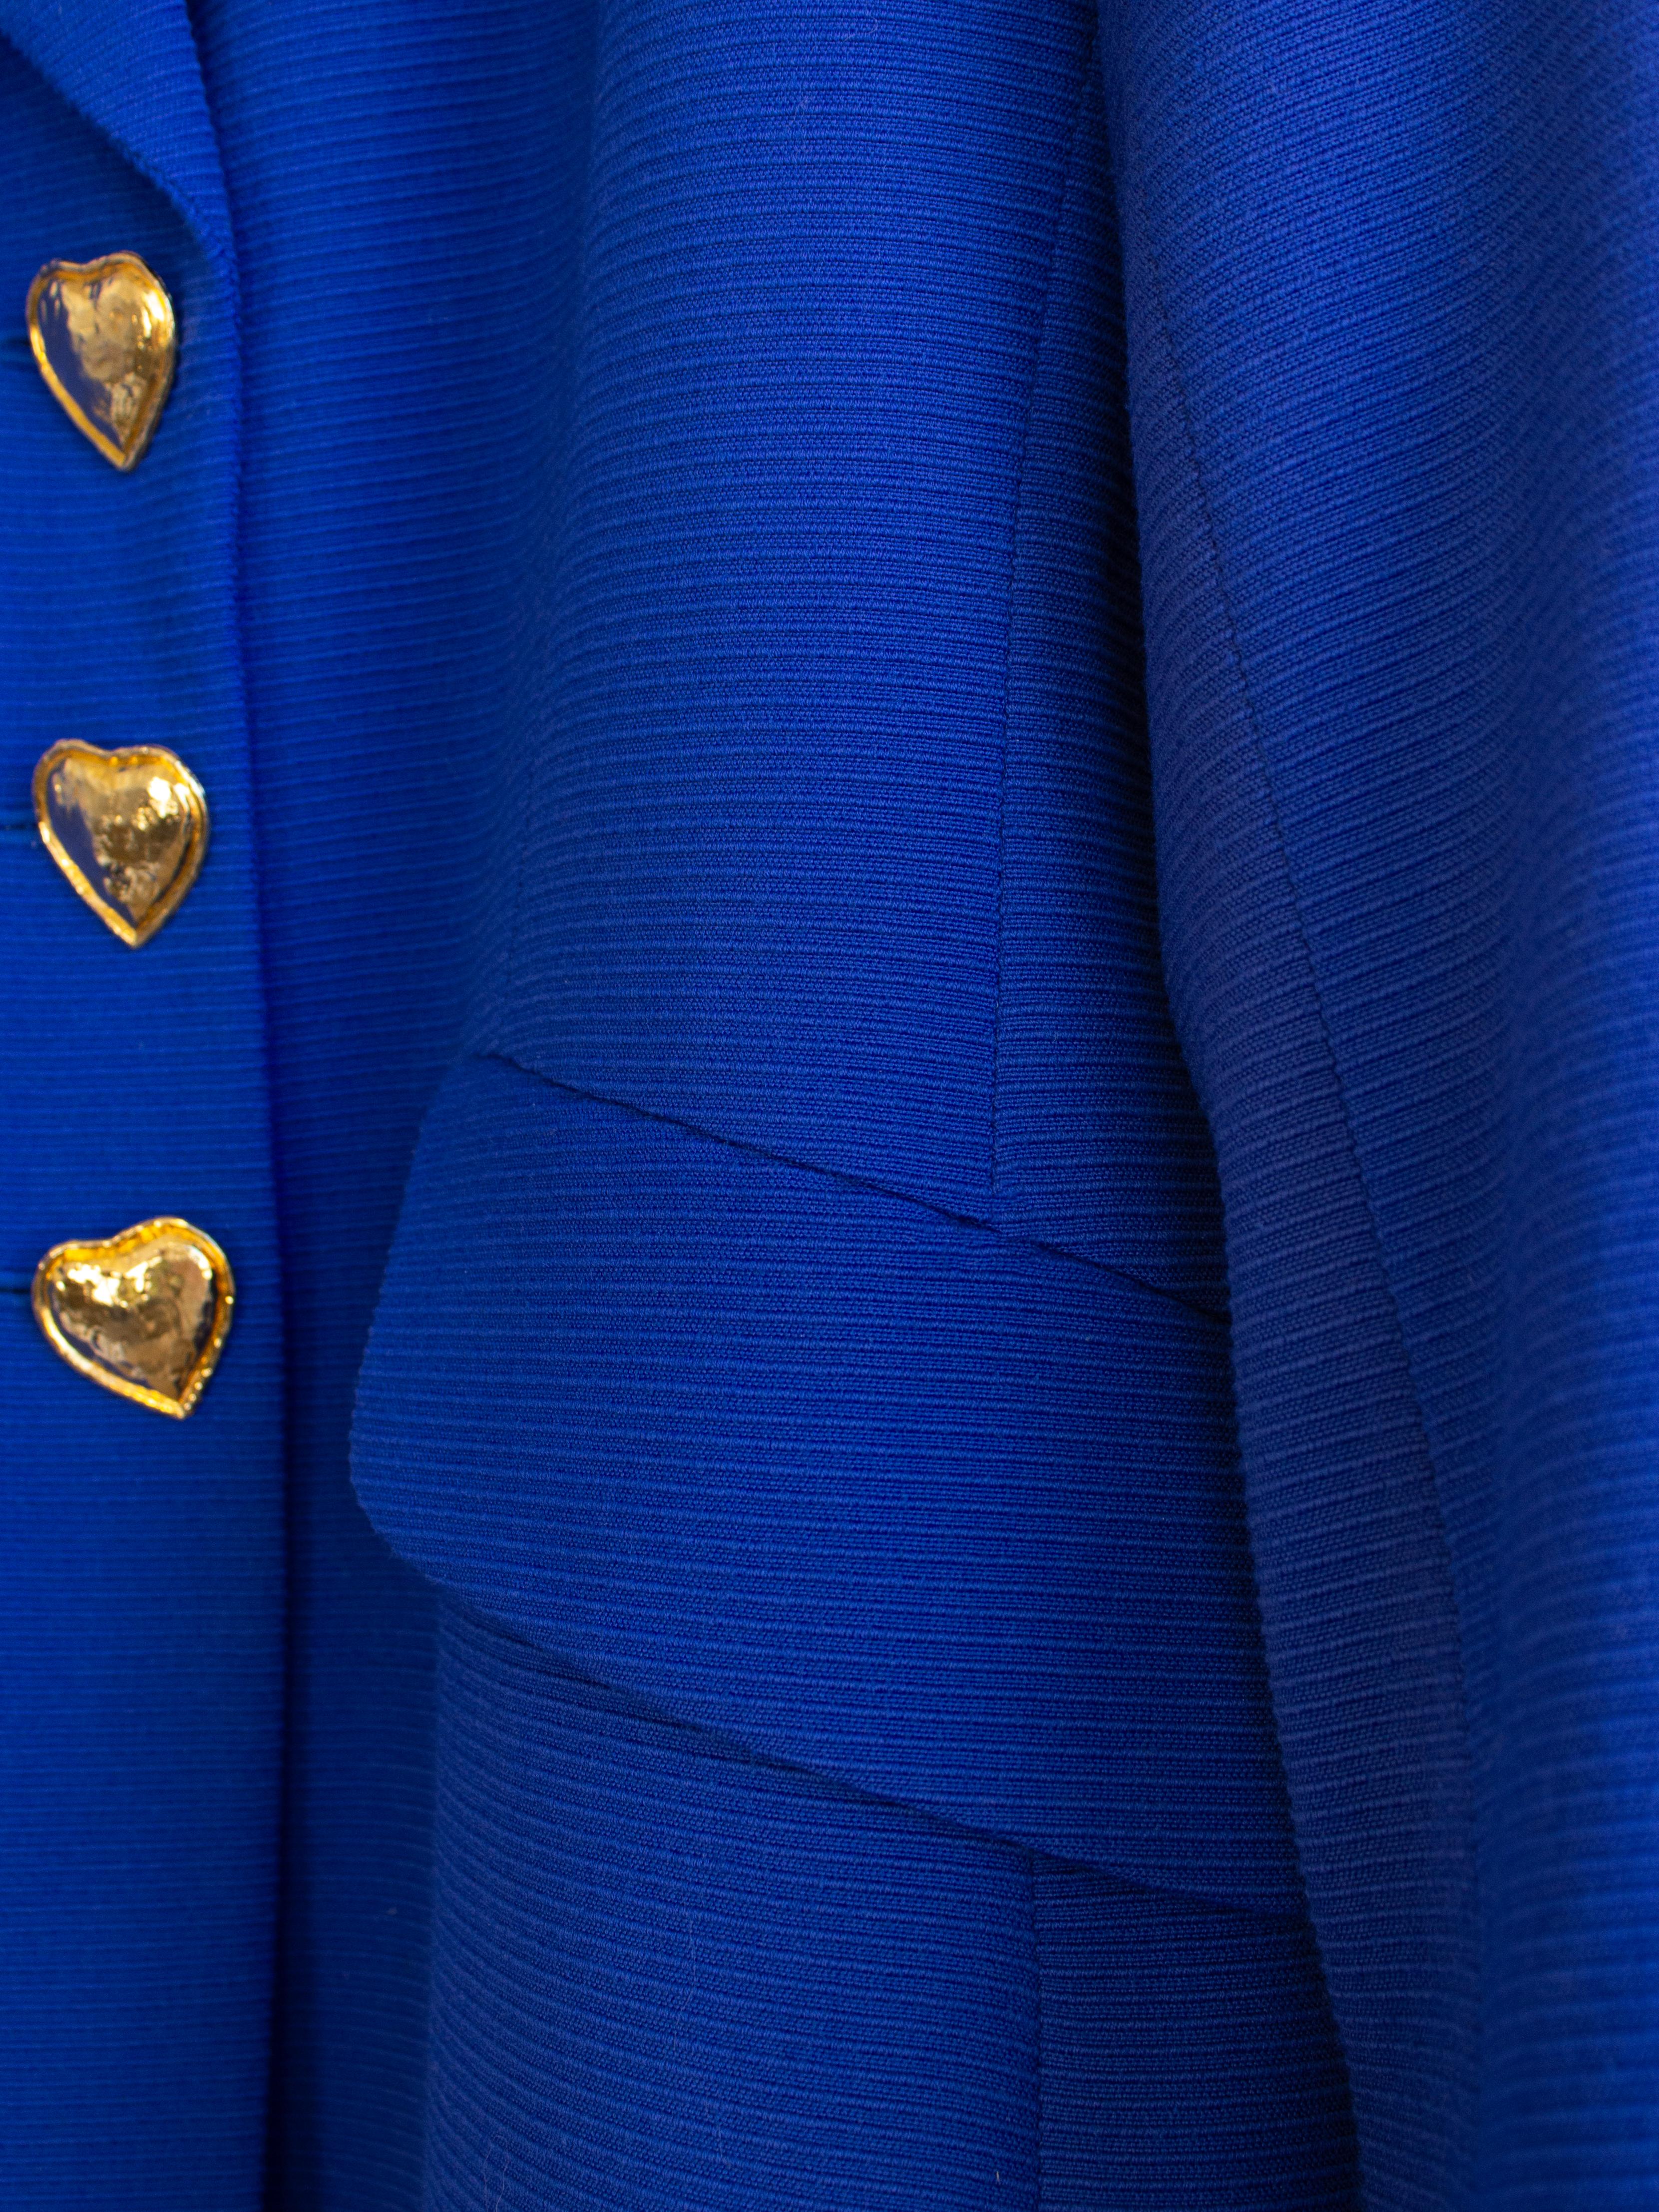 Yves Saint Laurent Encore Vintage S/S 1995 Royal Blue Gold Hearts Jacket Suit For Sale 6